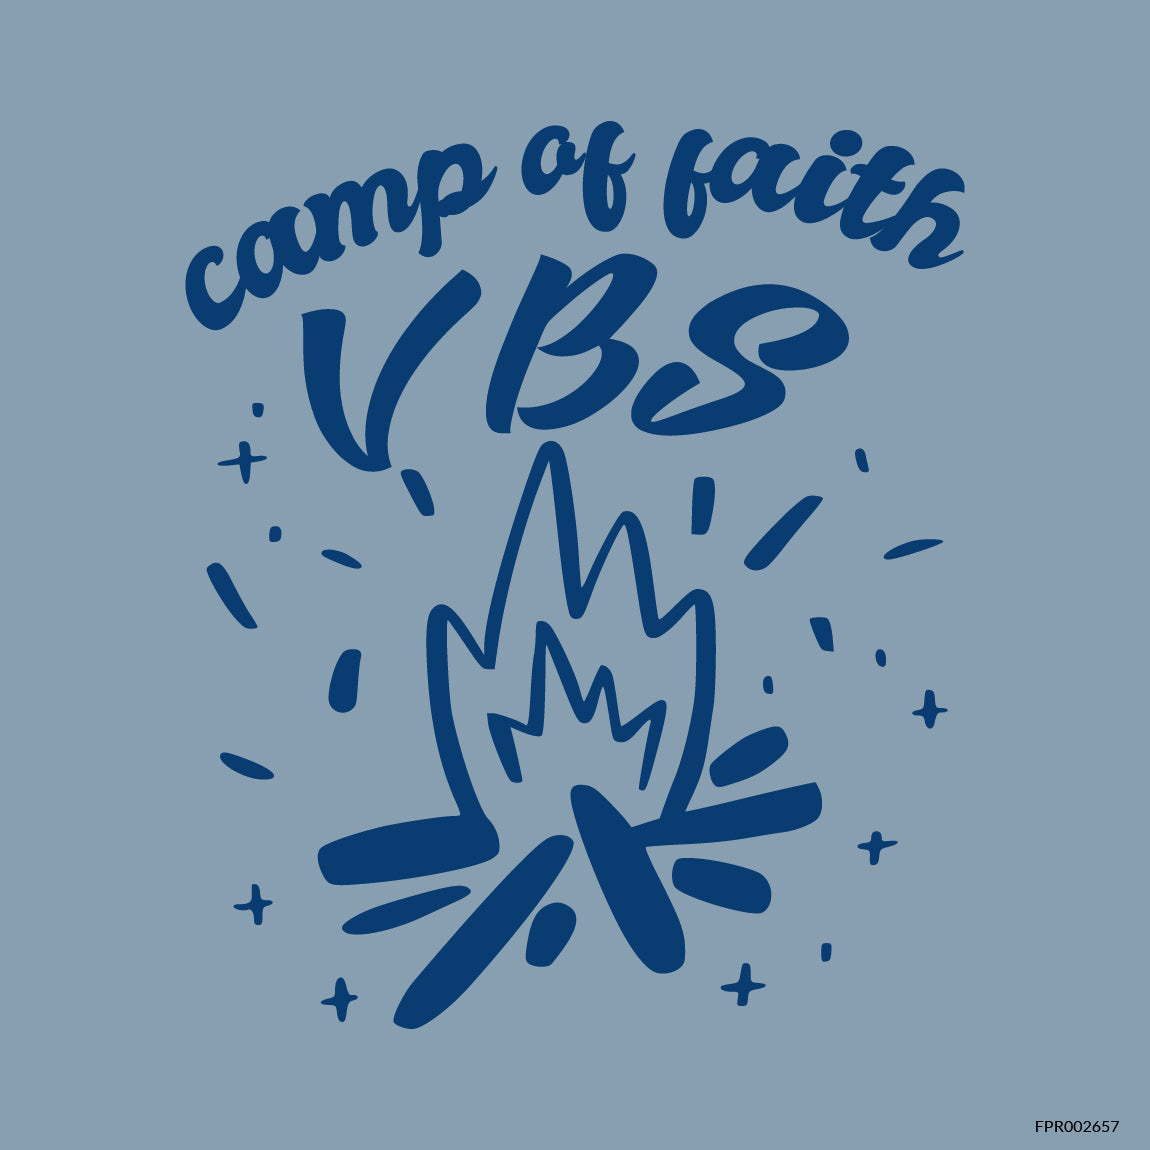 Camp of Faith